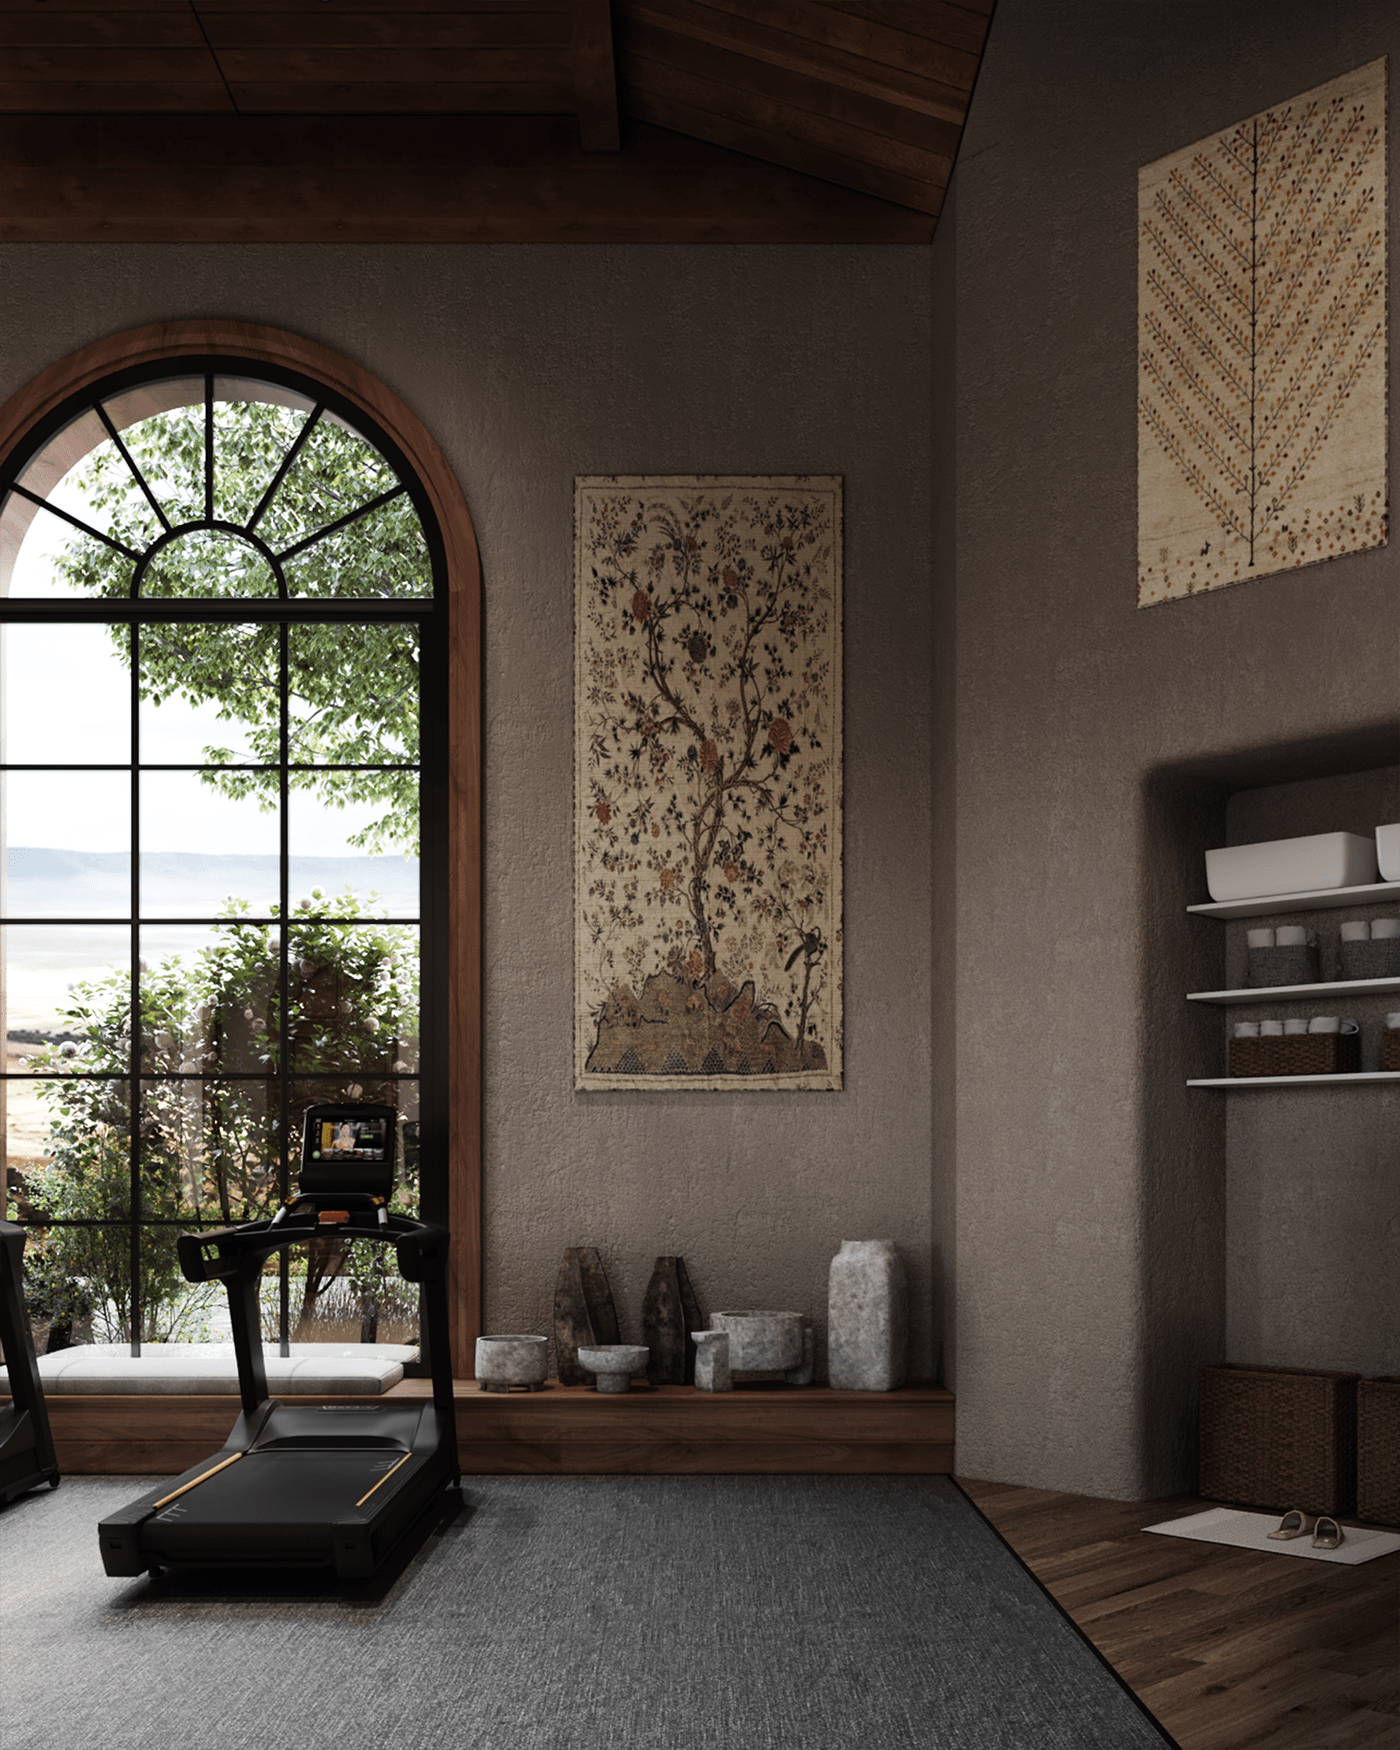 cozy farm house gym Interior interior design  mediterranean Mediterranean style modern Render visualization